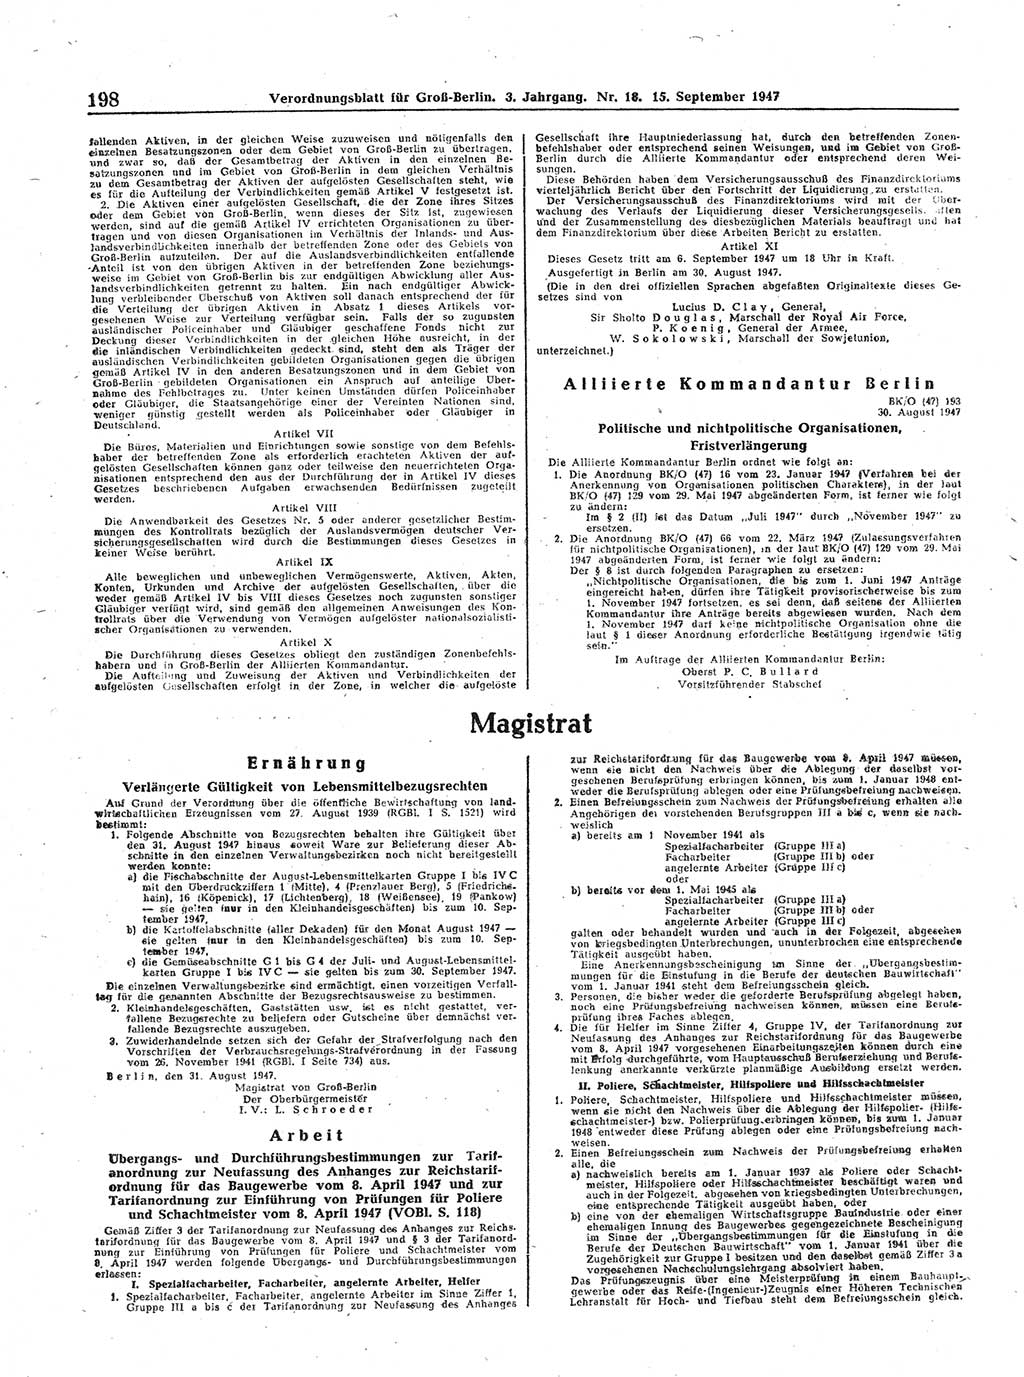 Verordnungsblatt (VOBl.) für Groß-Berlin 1947, Seite 198 (VOBl. Bln. 1947, S. 198)